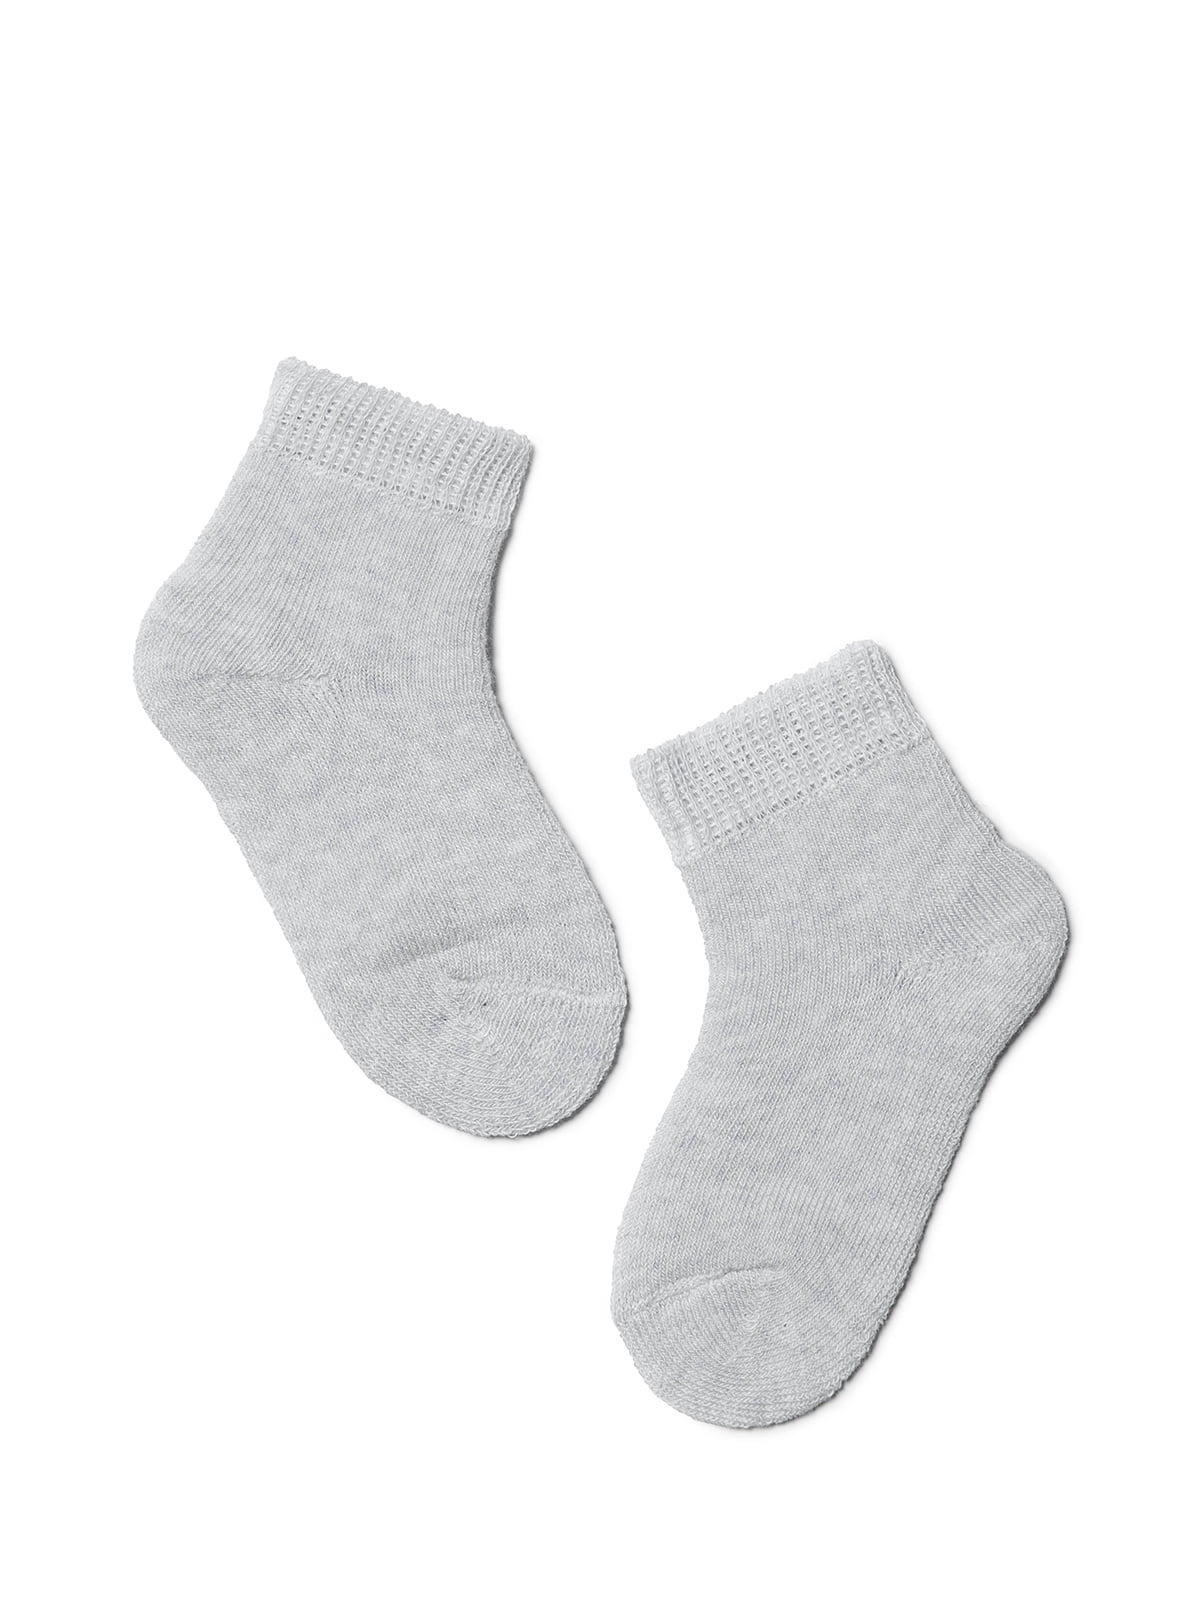 Шкарпетки сірі махрові | 3750346